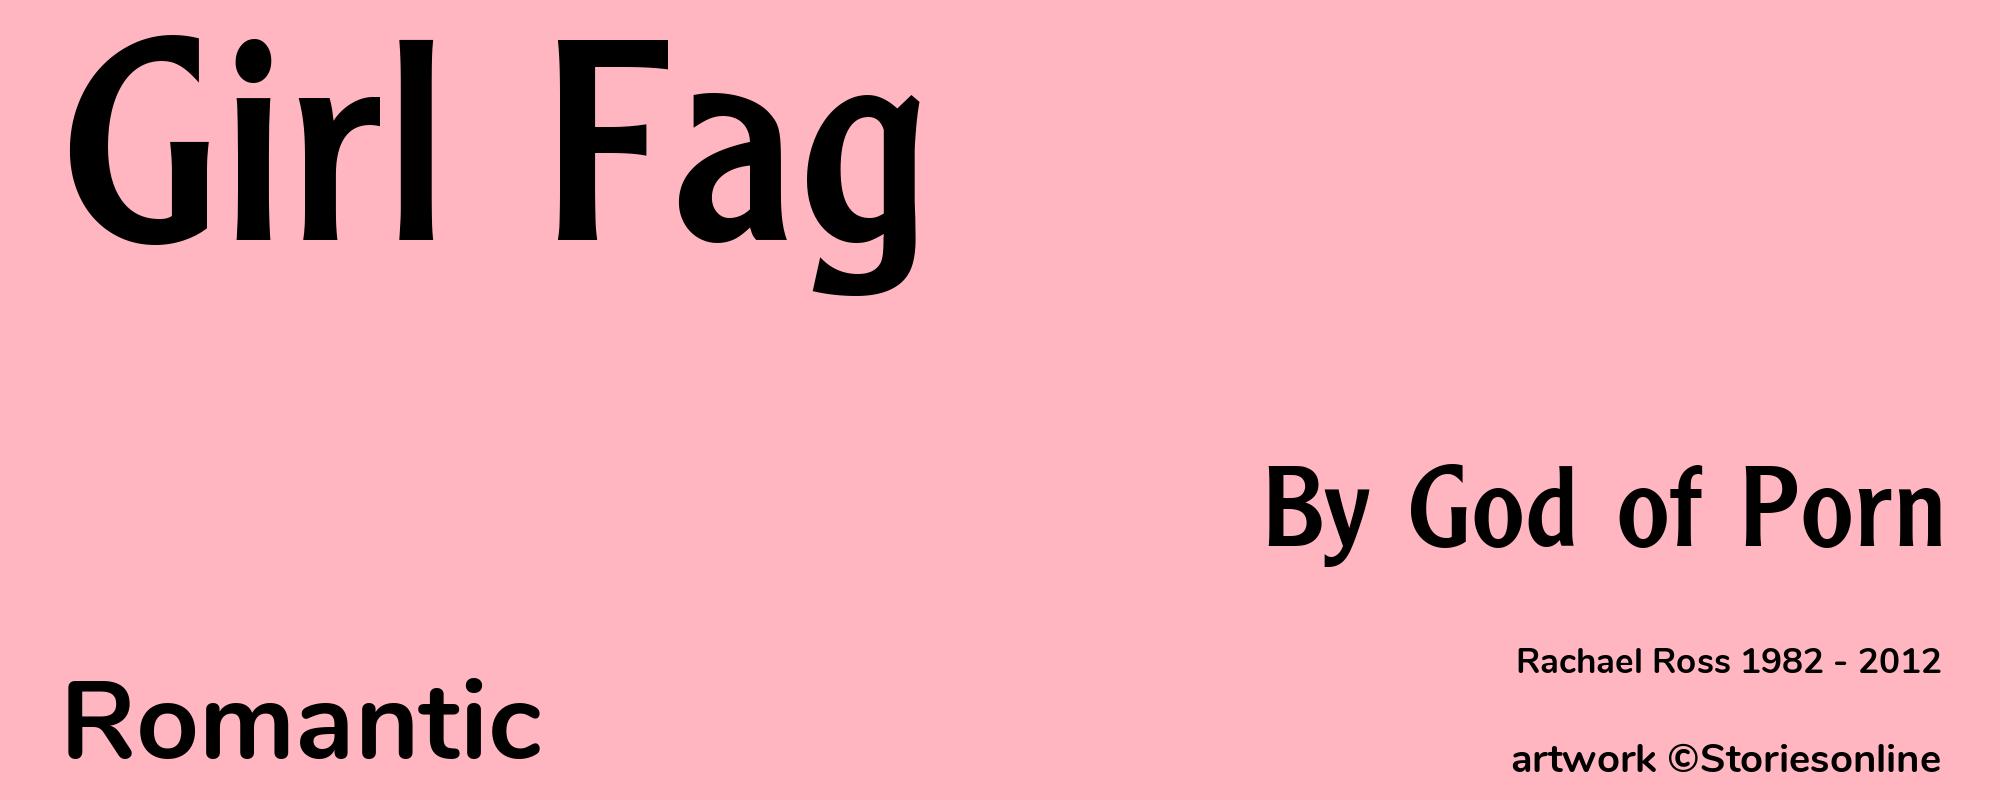 Girl Fag - Cover